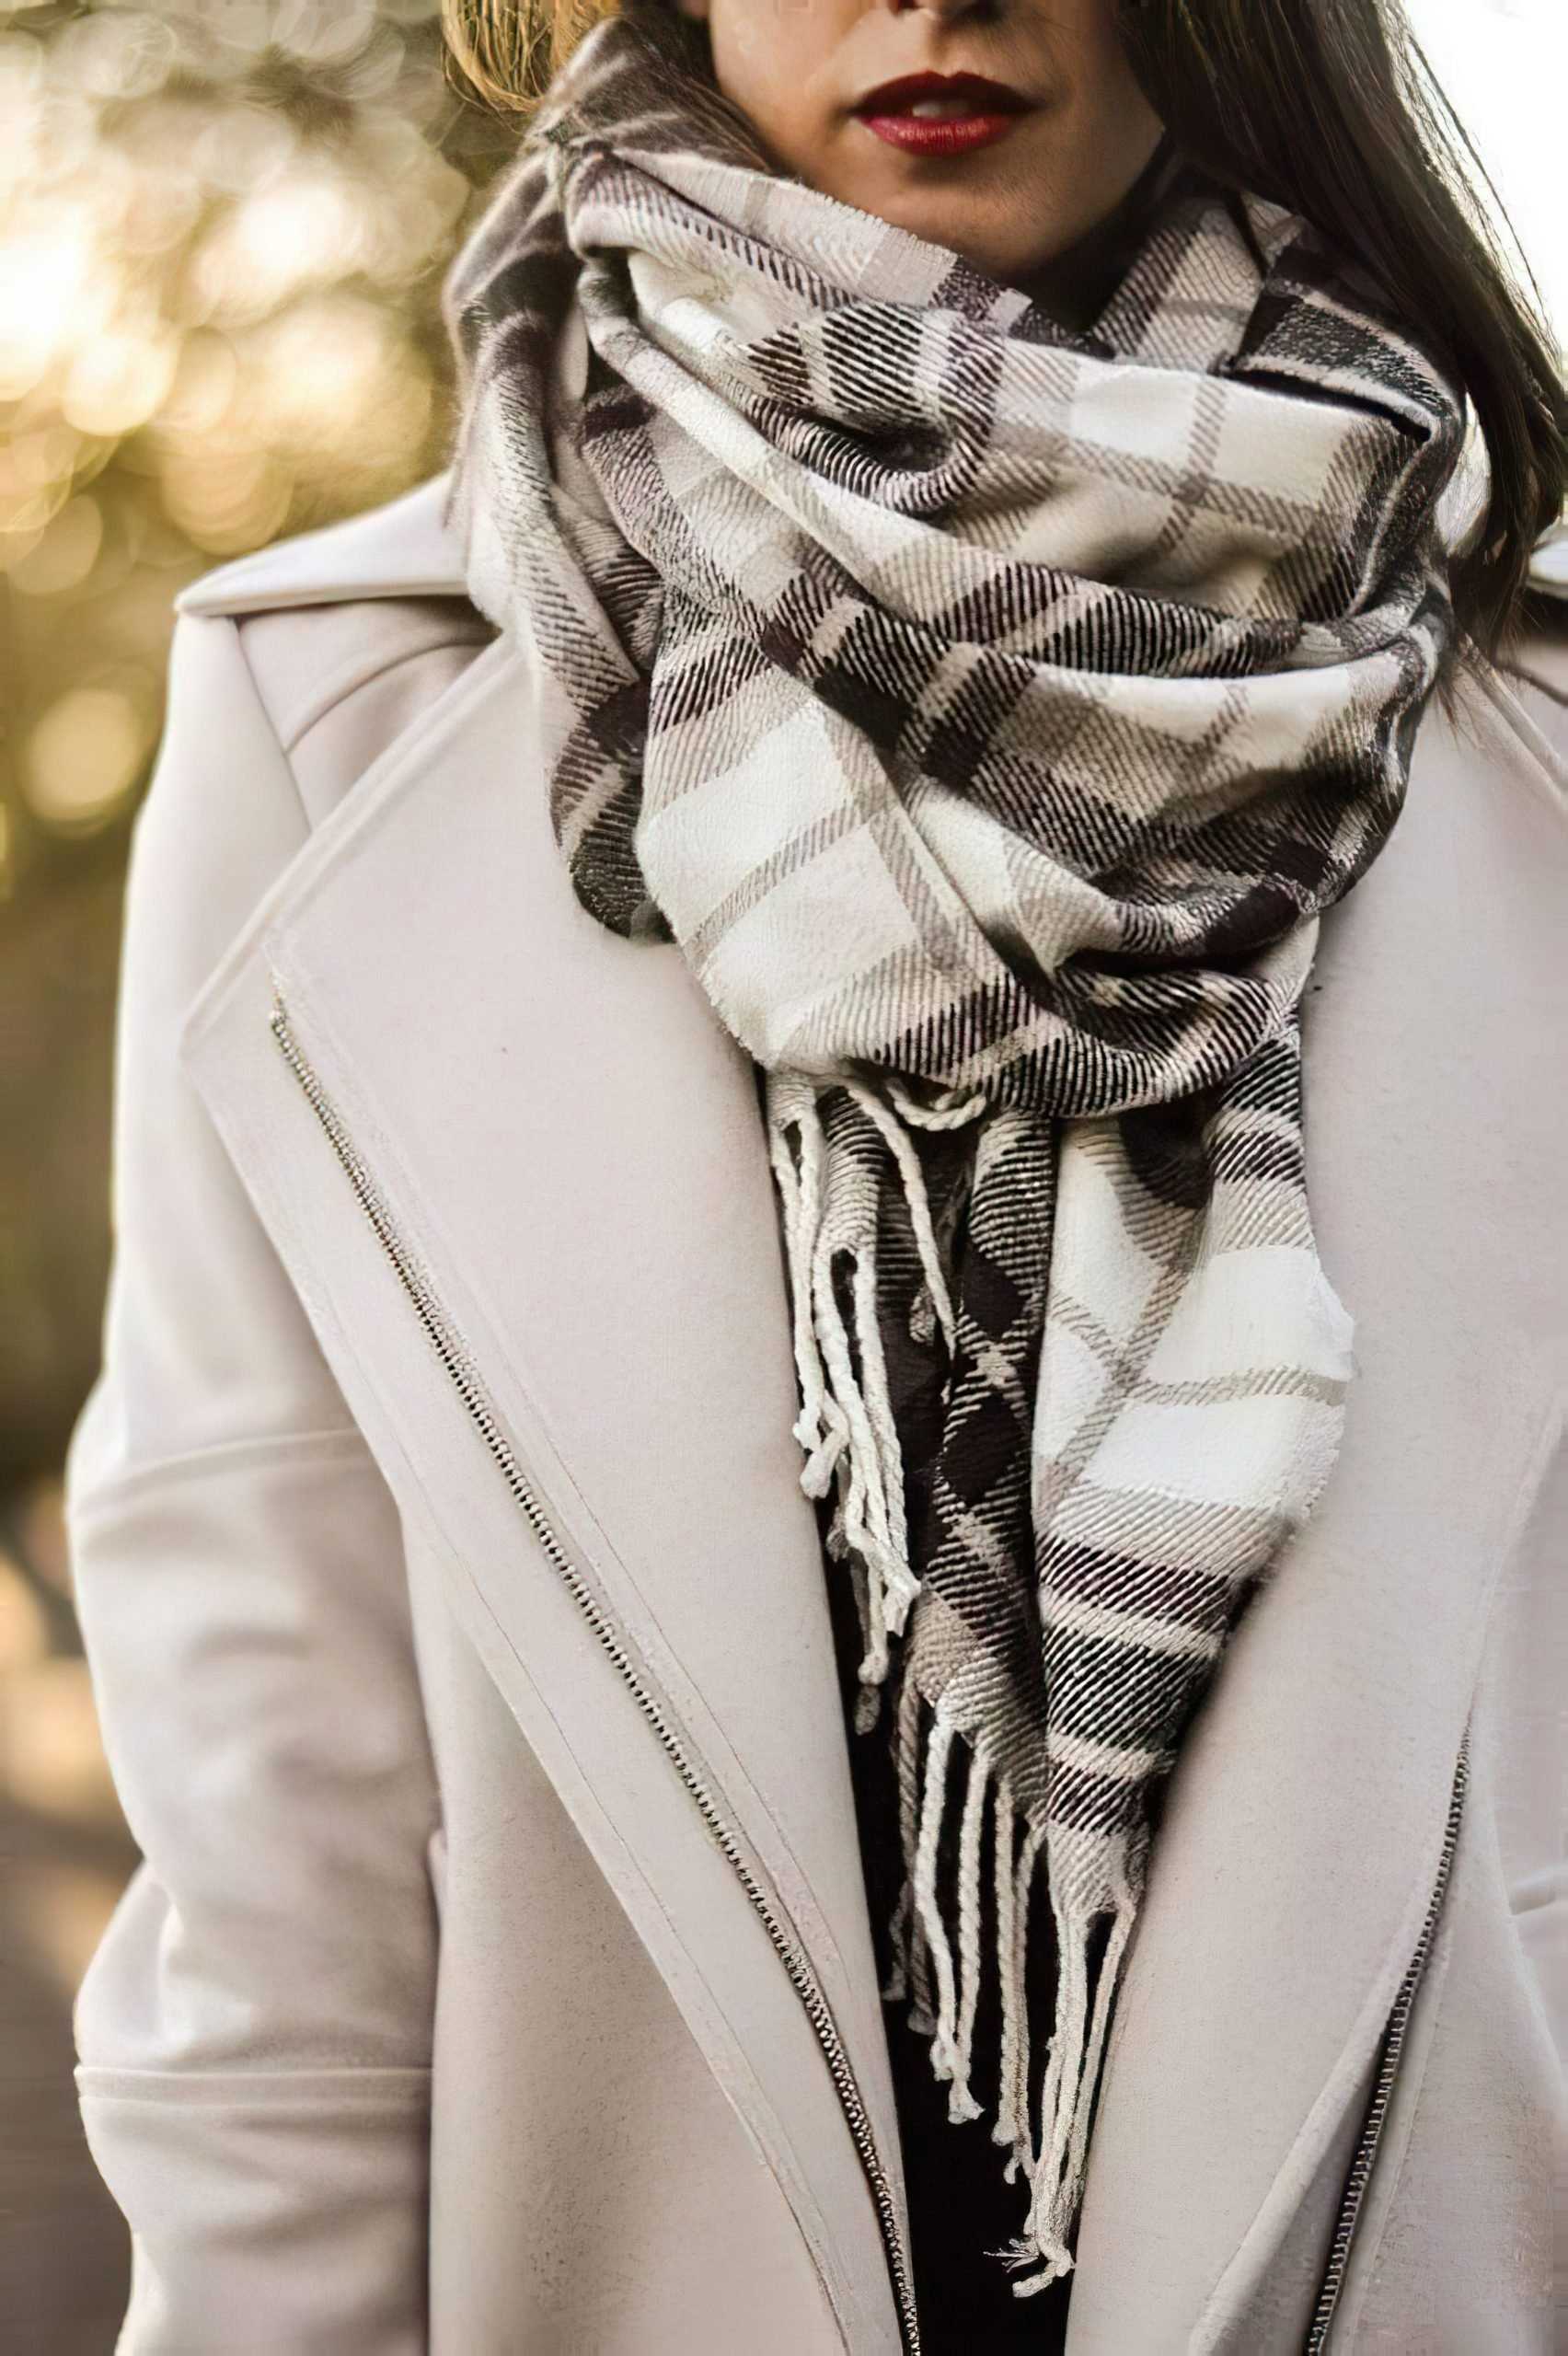 Как одеть шарф к пальто